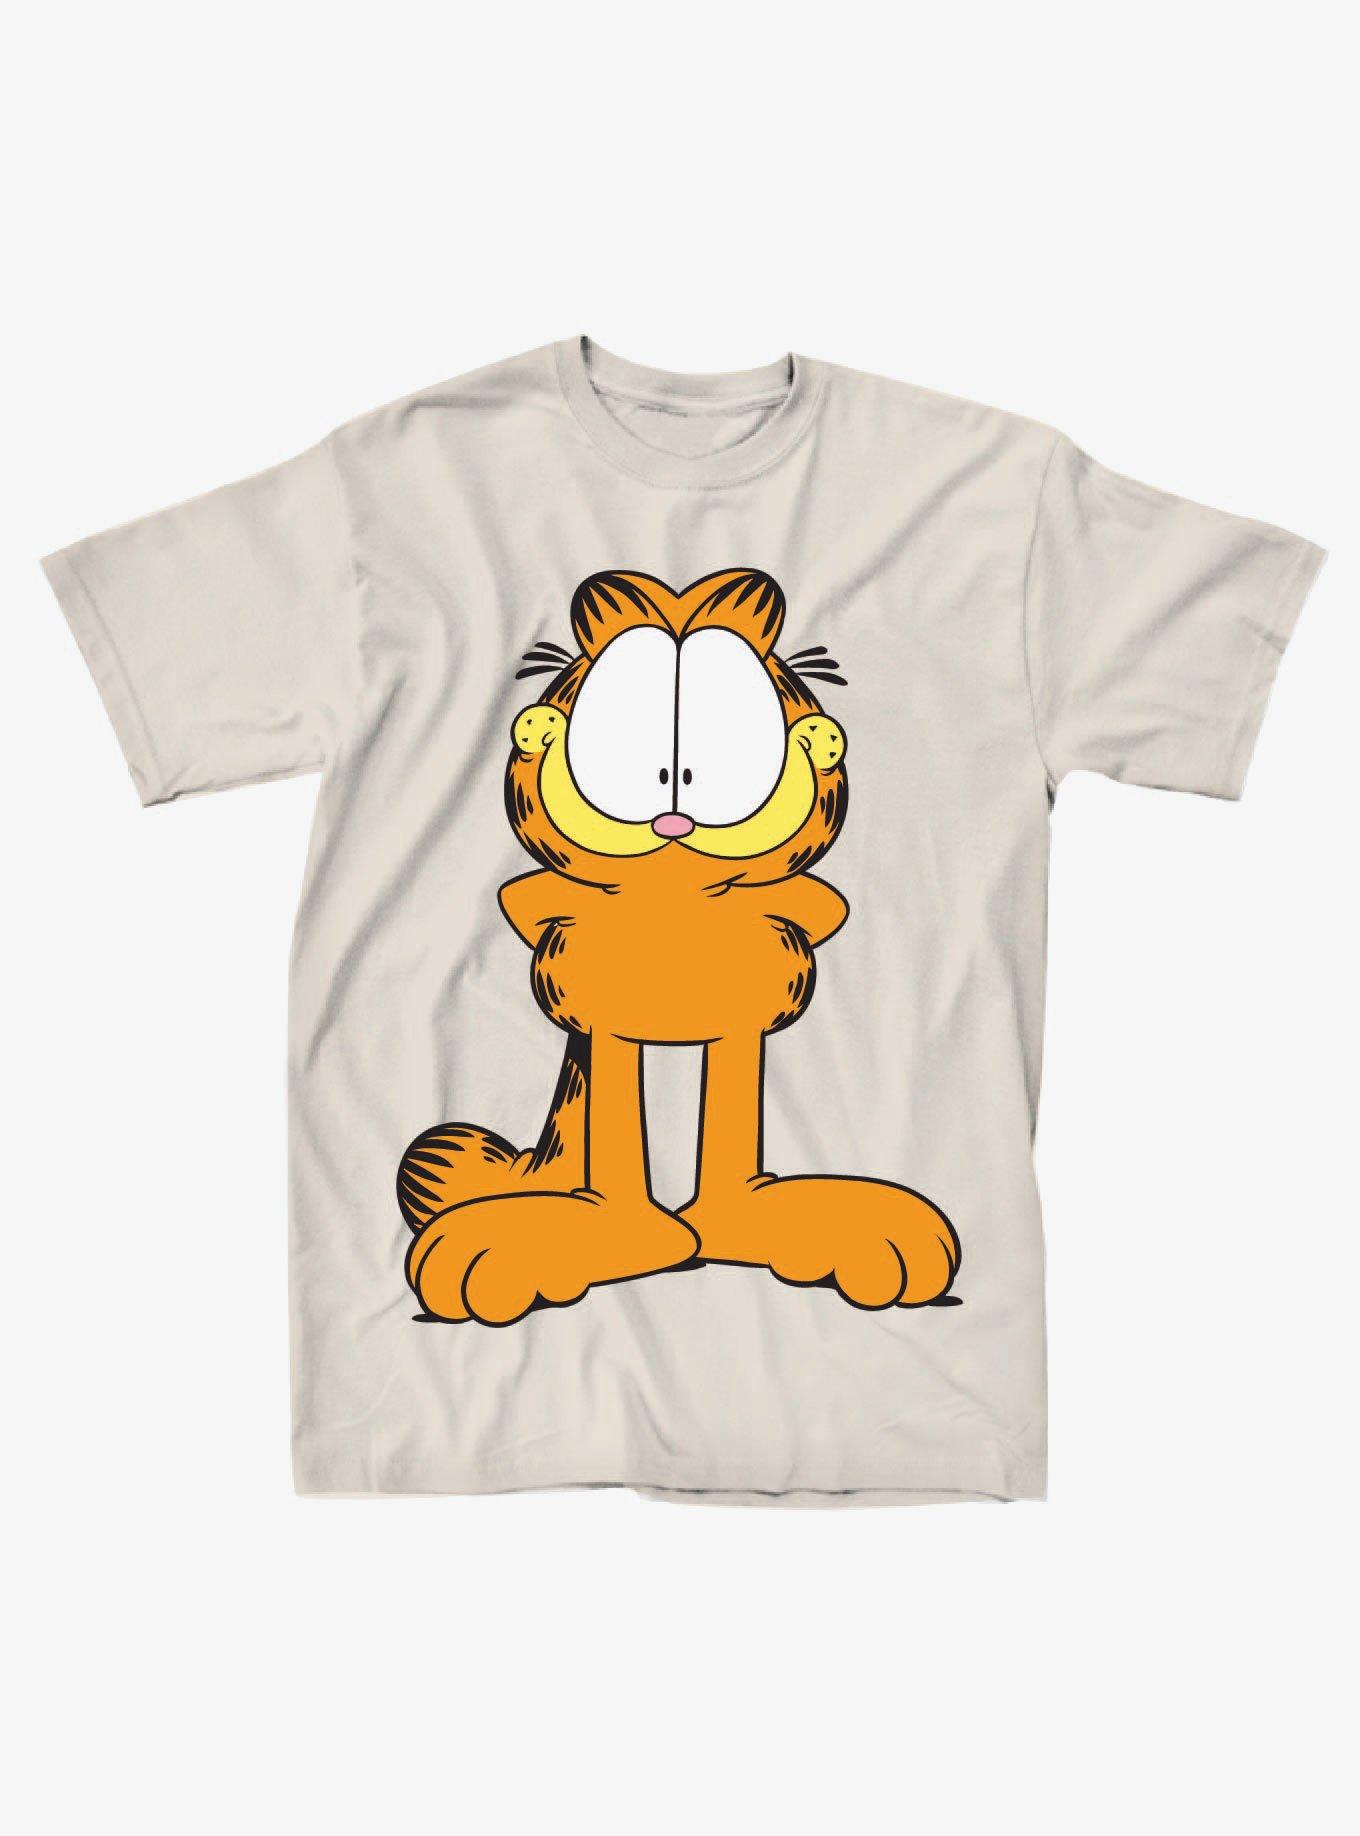 Pokemon Garfield T Pose